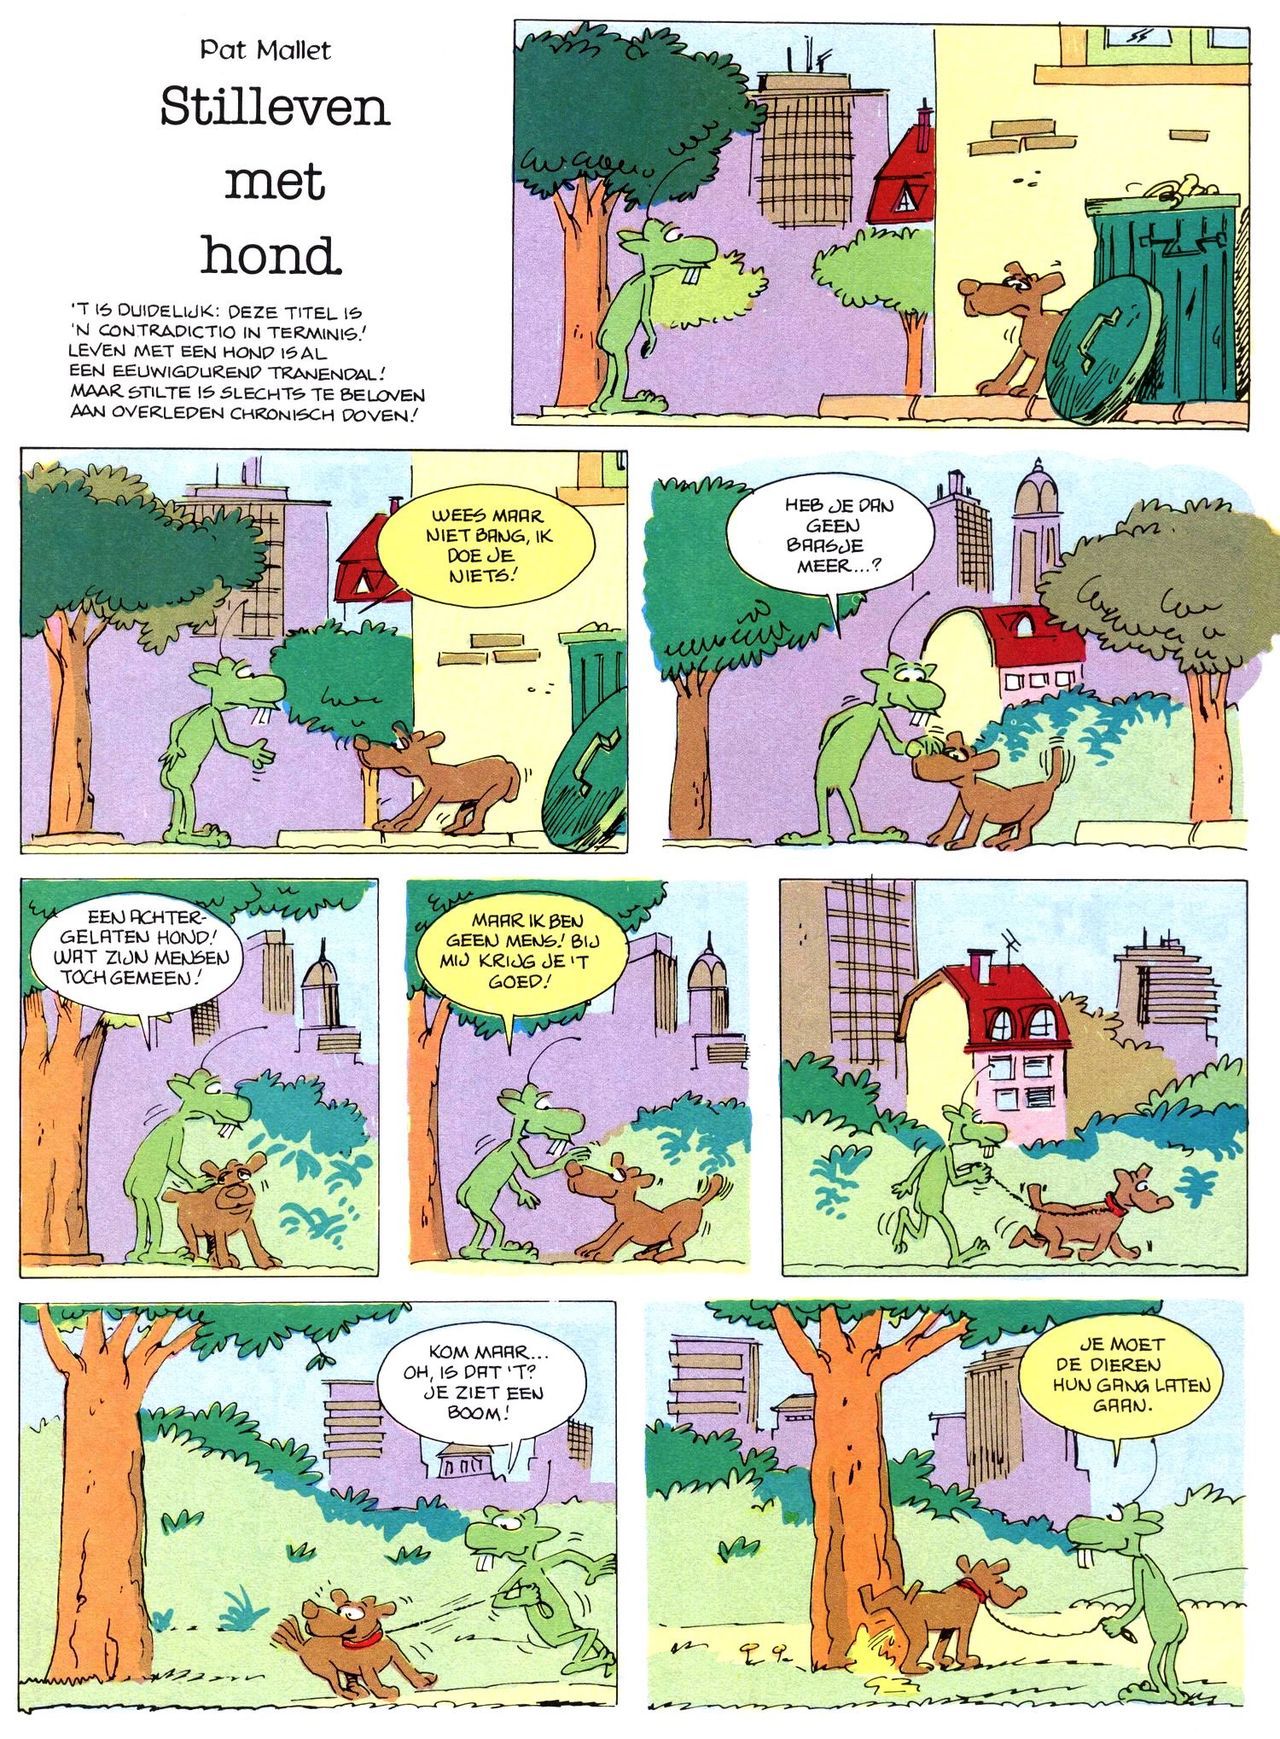 Het Is Groen En Het.. - 02 - Verboden Op Het Gras Te Lopen (Dutch) Een oude humoristische serie van Pat Mallet 33